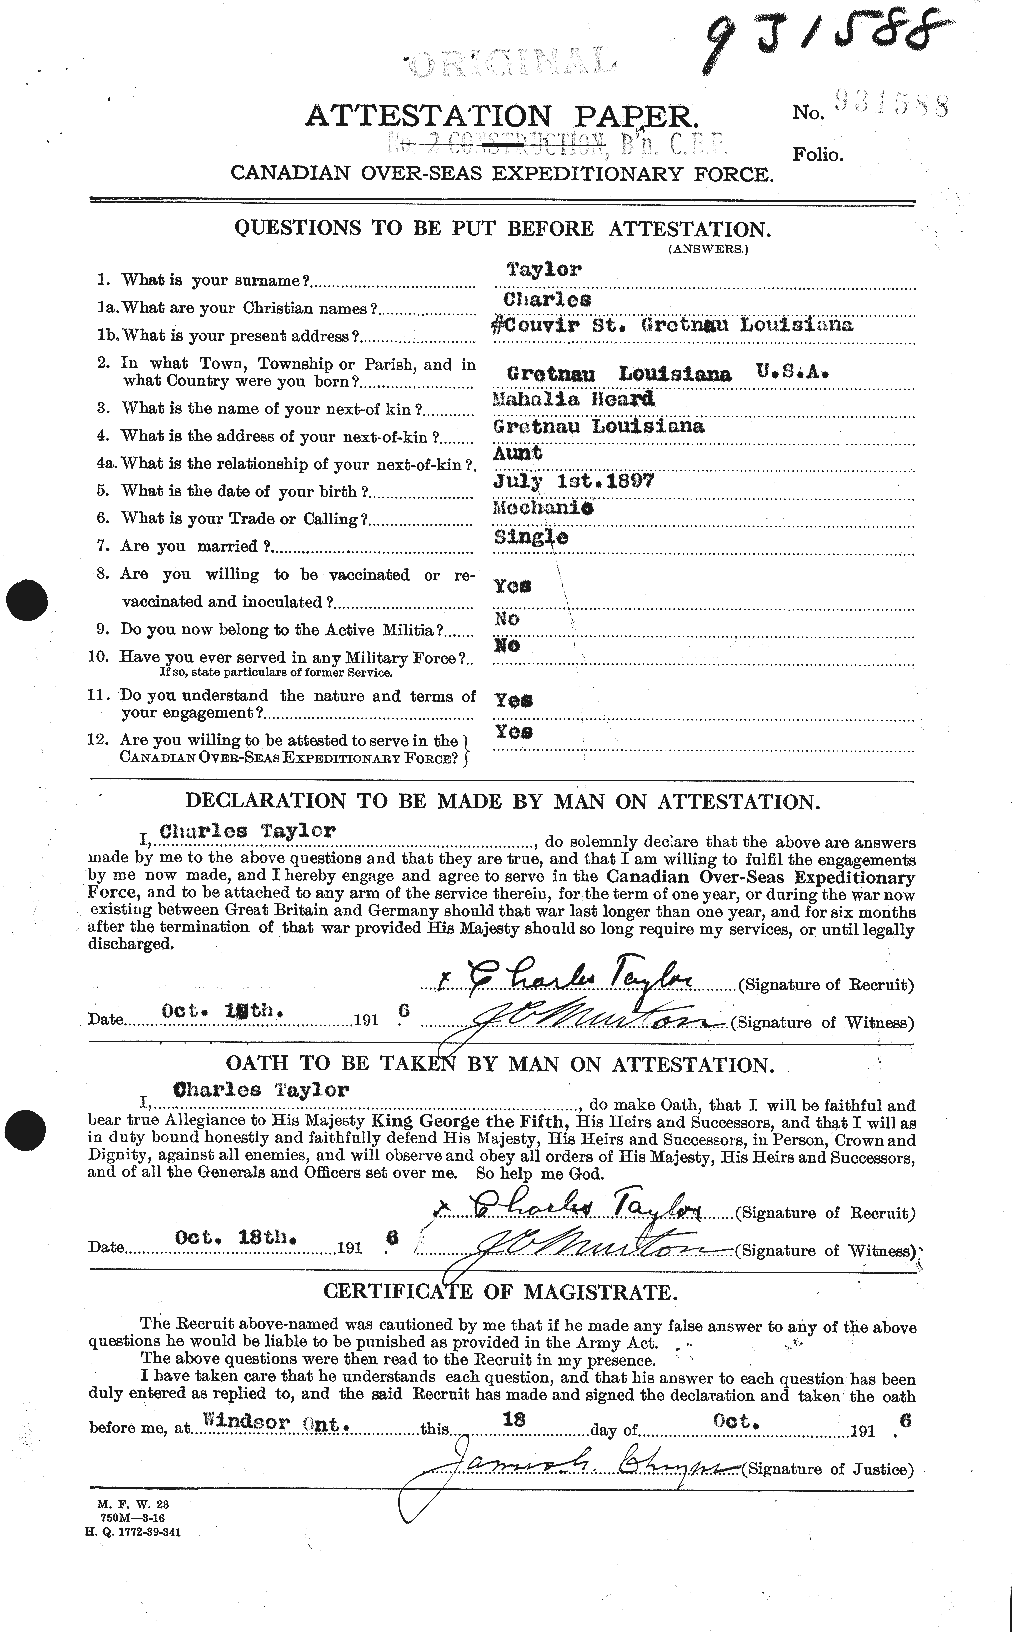 Dossiers du Personnel de la Première Guerre mondiale - CEC 626814a